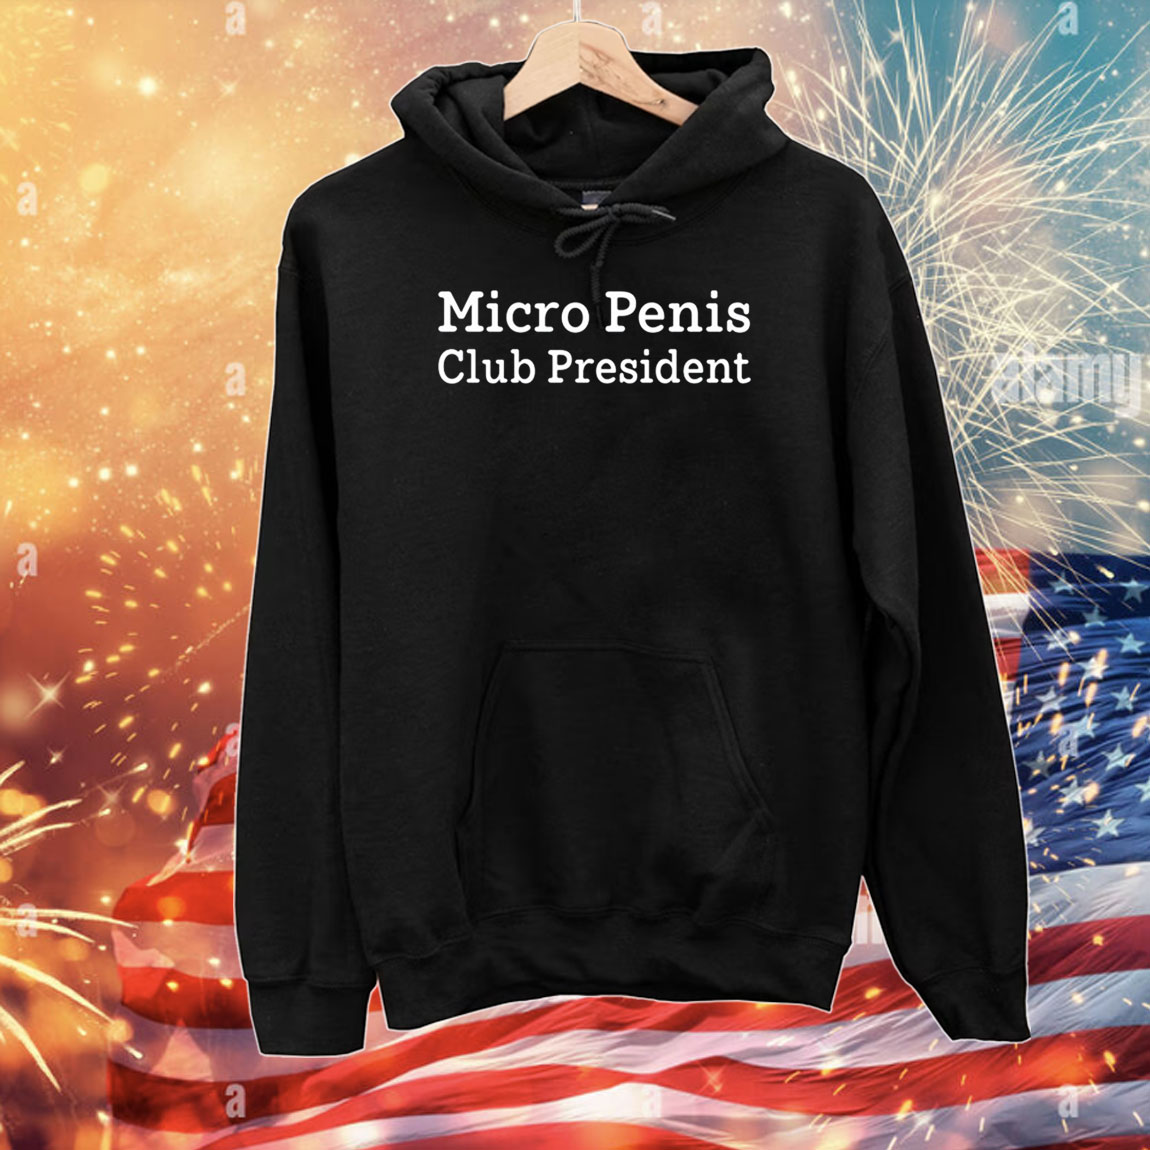 Micro Penis Club President T-Shirts